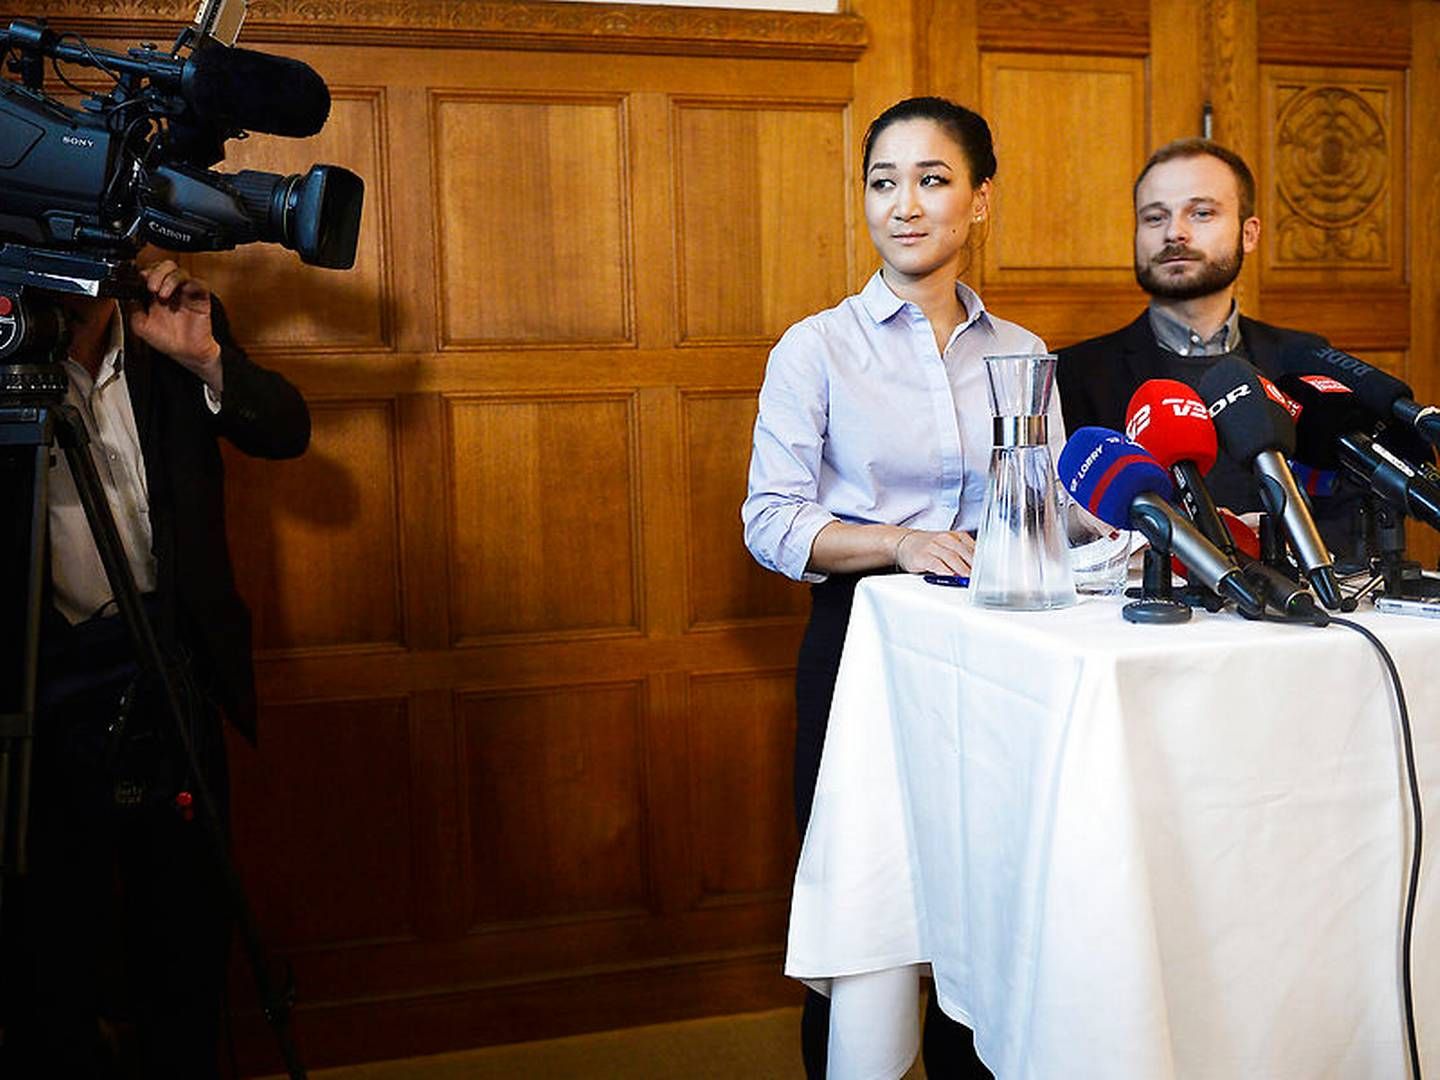 Anna Mee Allerslev trak sig i oktober 2017 som spidskandidat for Radikale Venstre i Københavns Kommune til det dengang forestående kommunalvalg. | Foto: Ritzau Scanpix/Mads Joakim Rimer Rasmussen